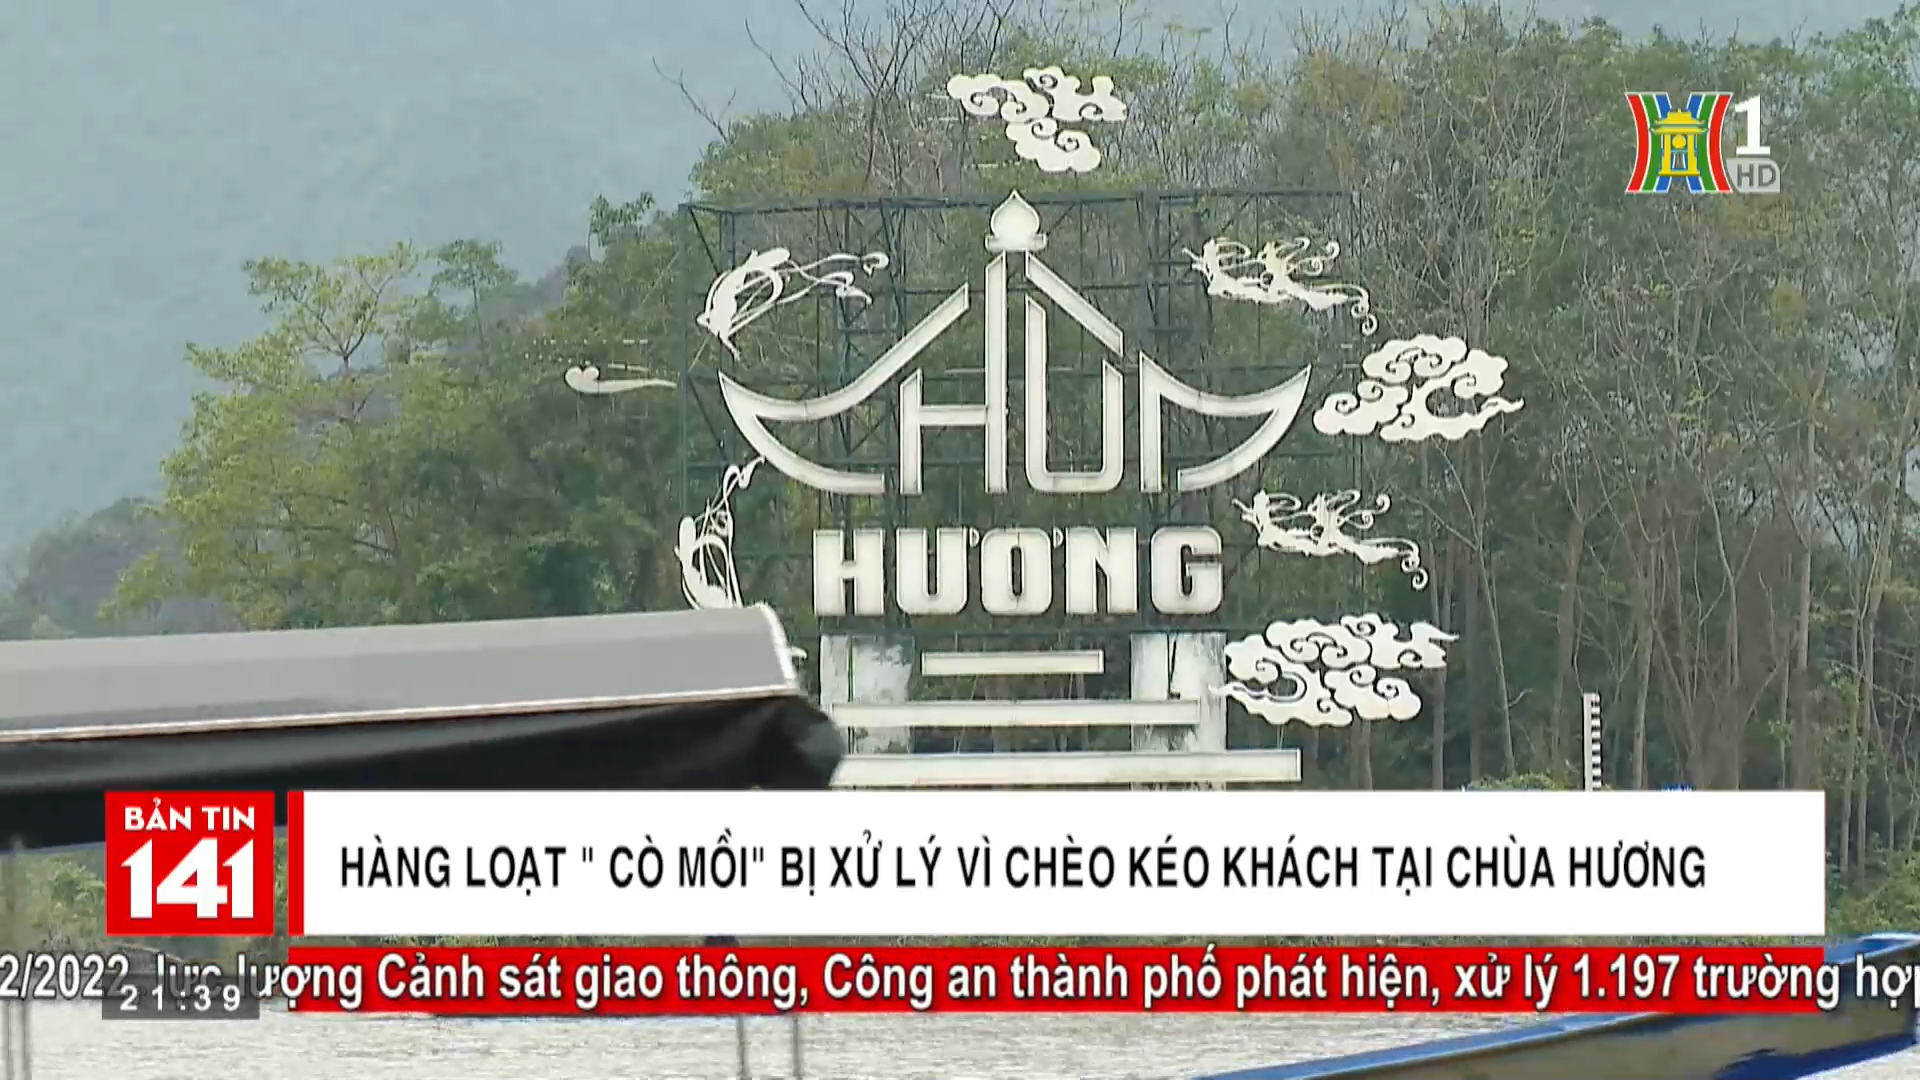 Hàng loạt cò mồi bị xử lý vì chèo kéo khách tại chùa Hương